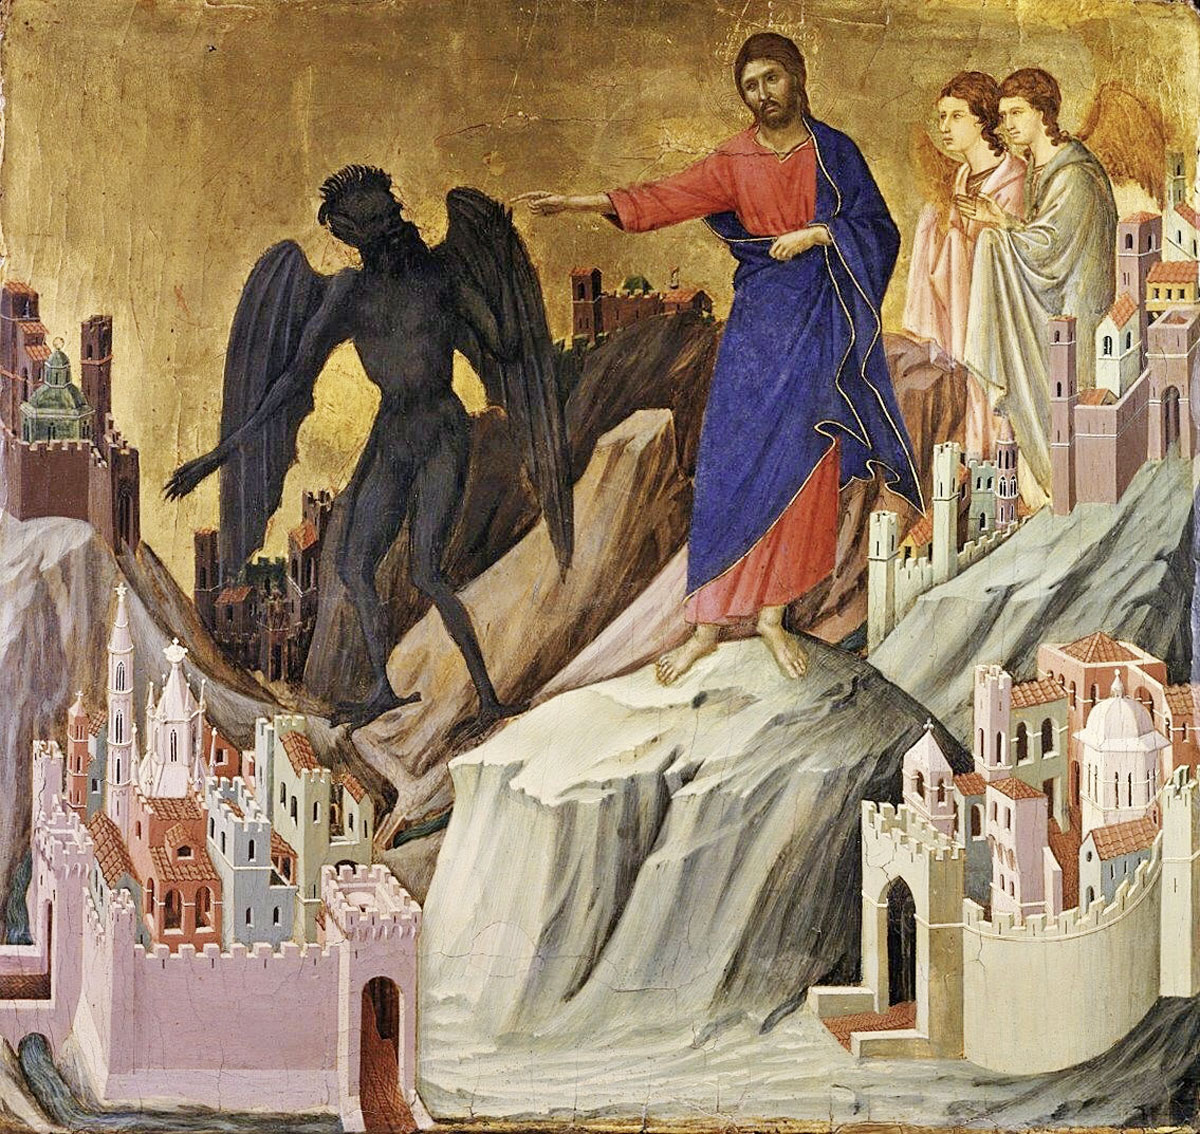 Le Christ a résisté à la tentation, comme le représente ici Duccio.